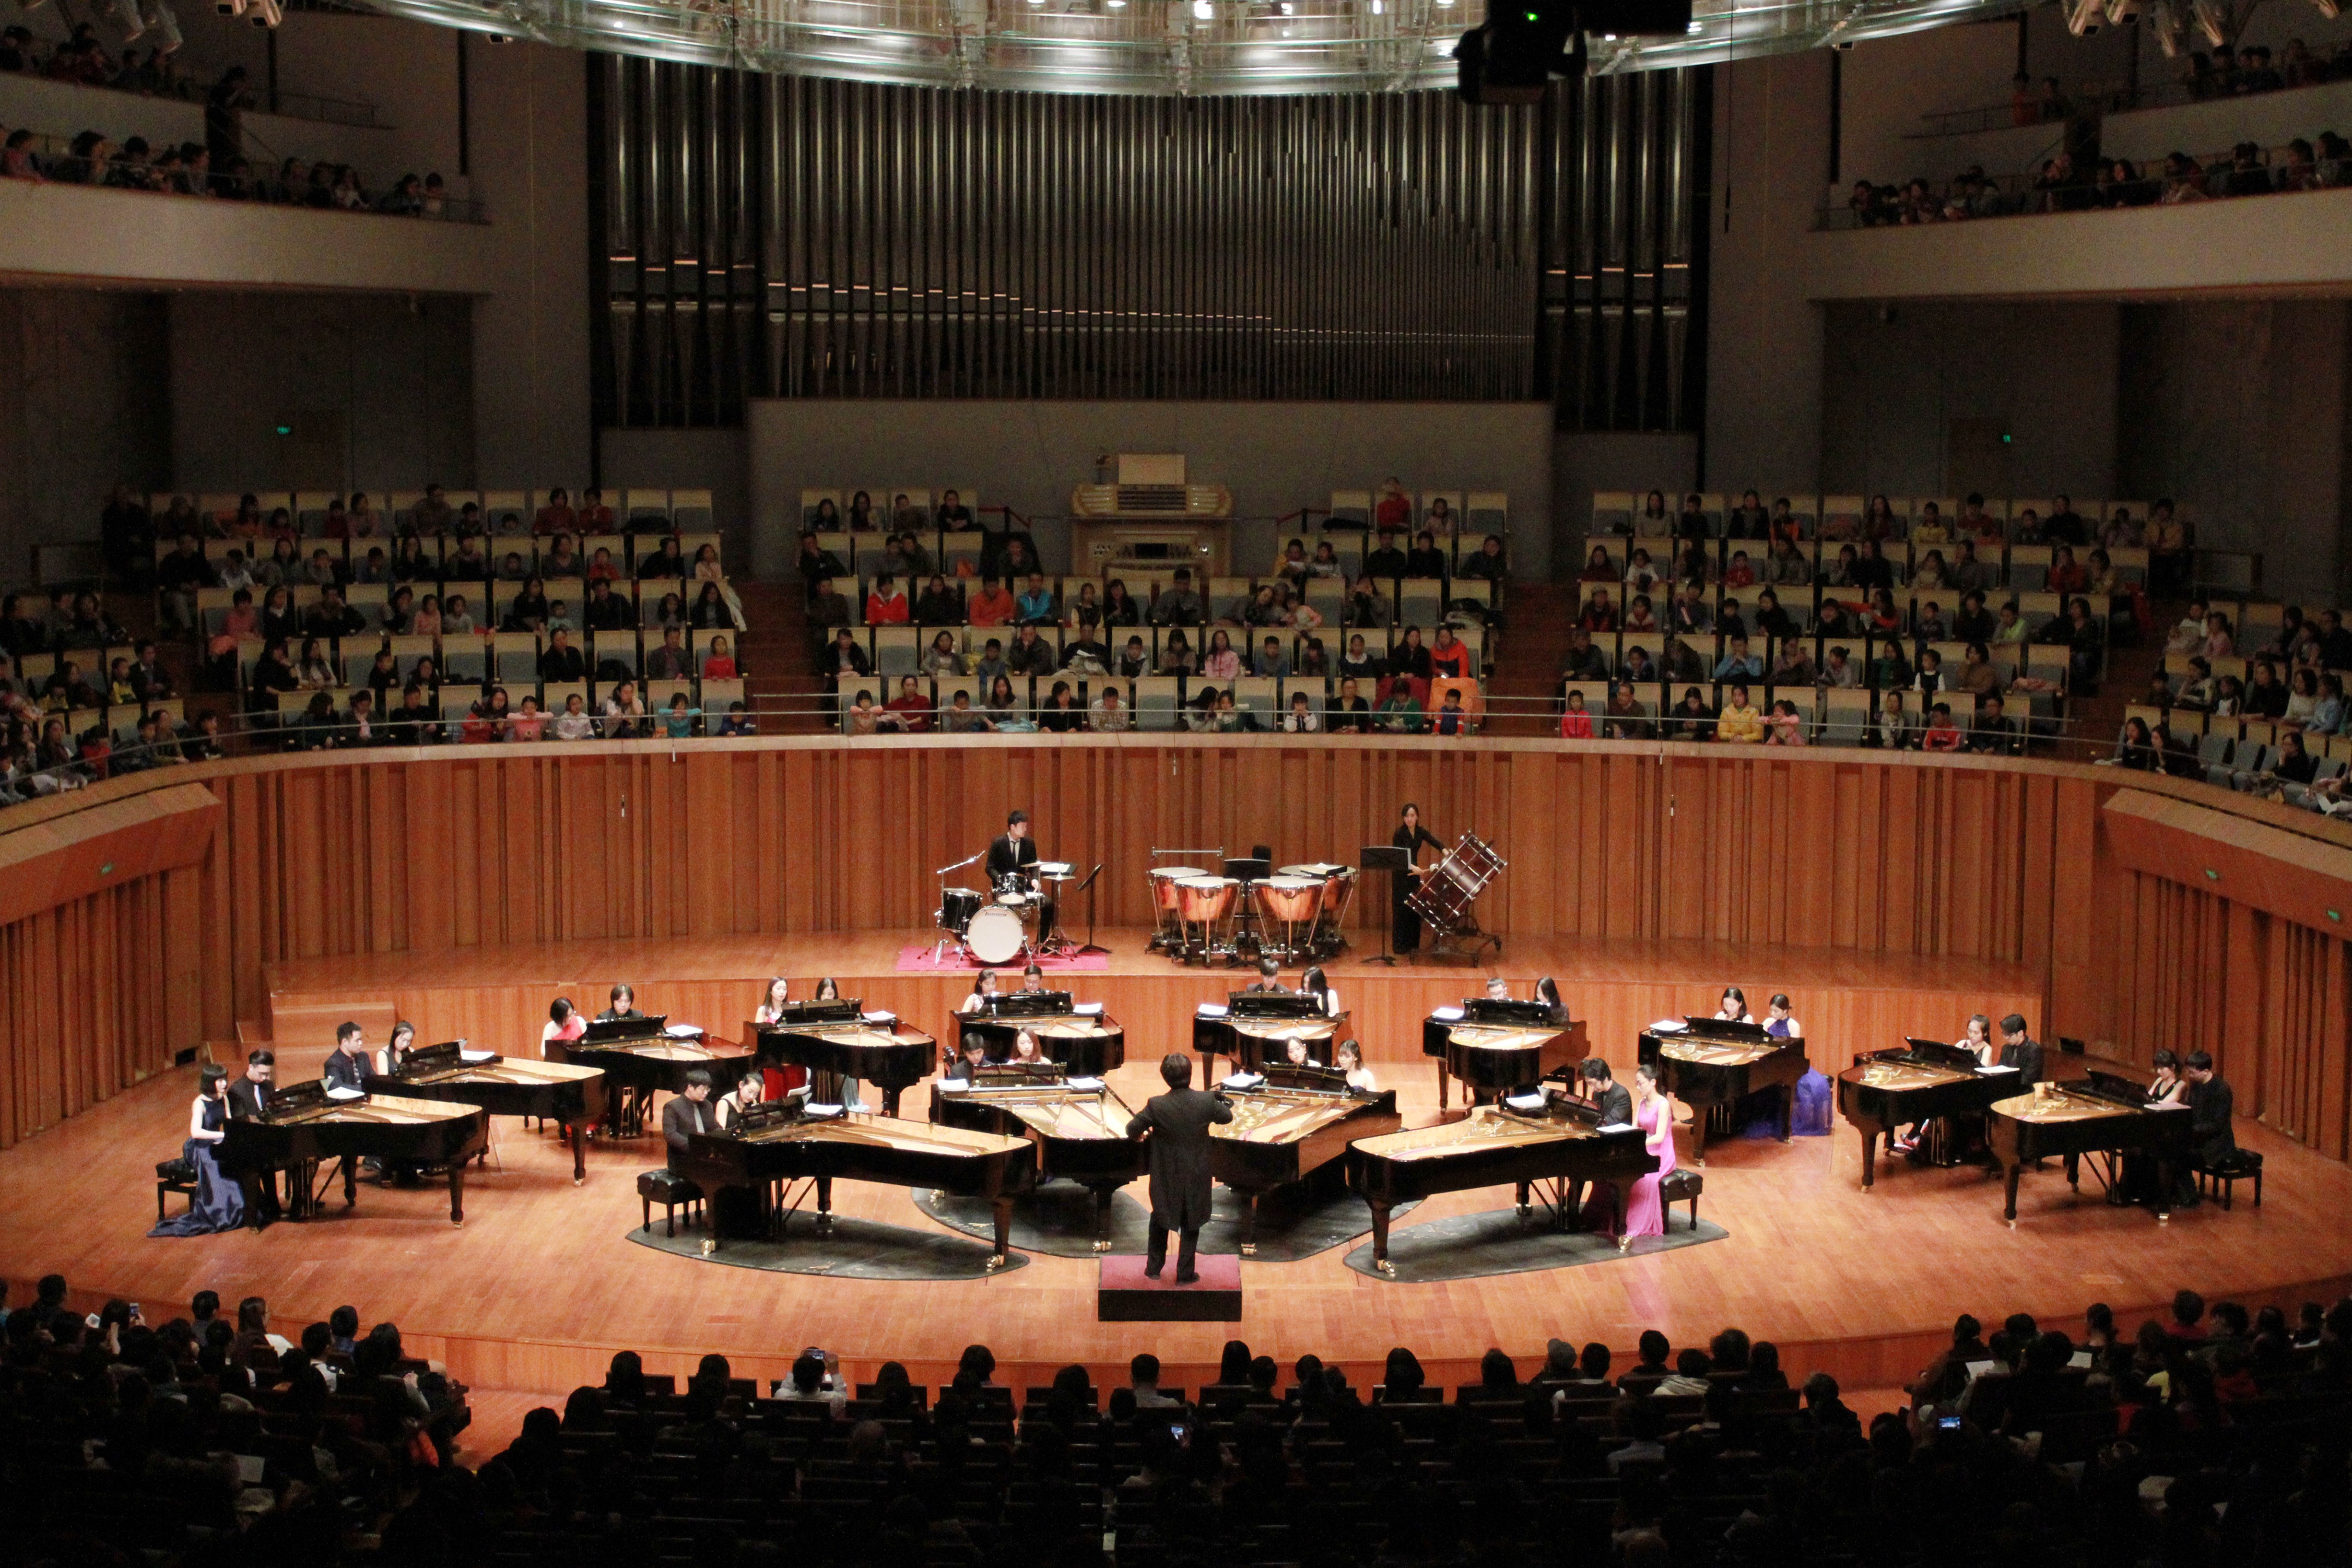 第七届长江钢琴音乐节开幕在即